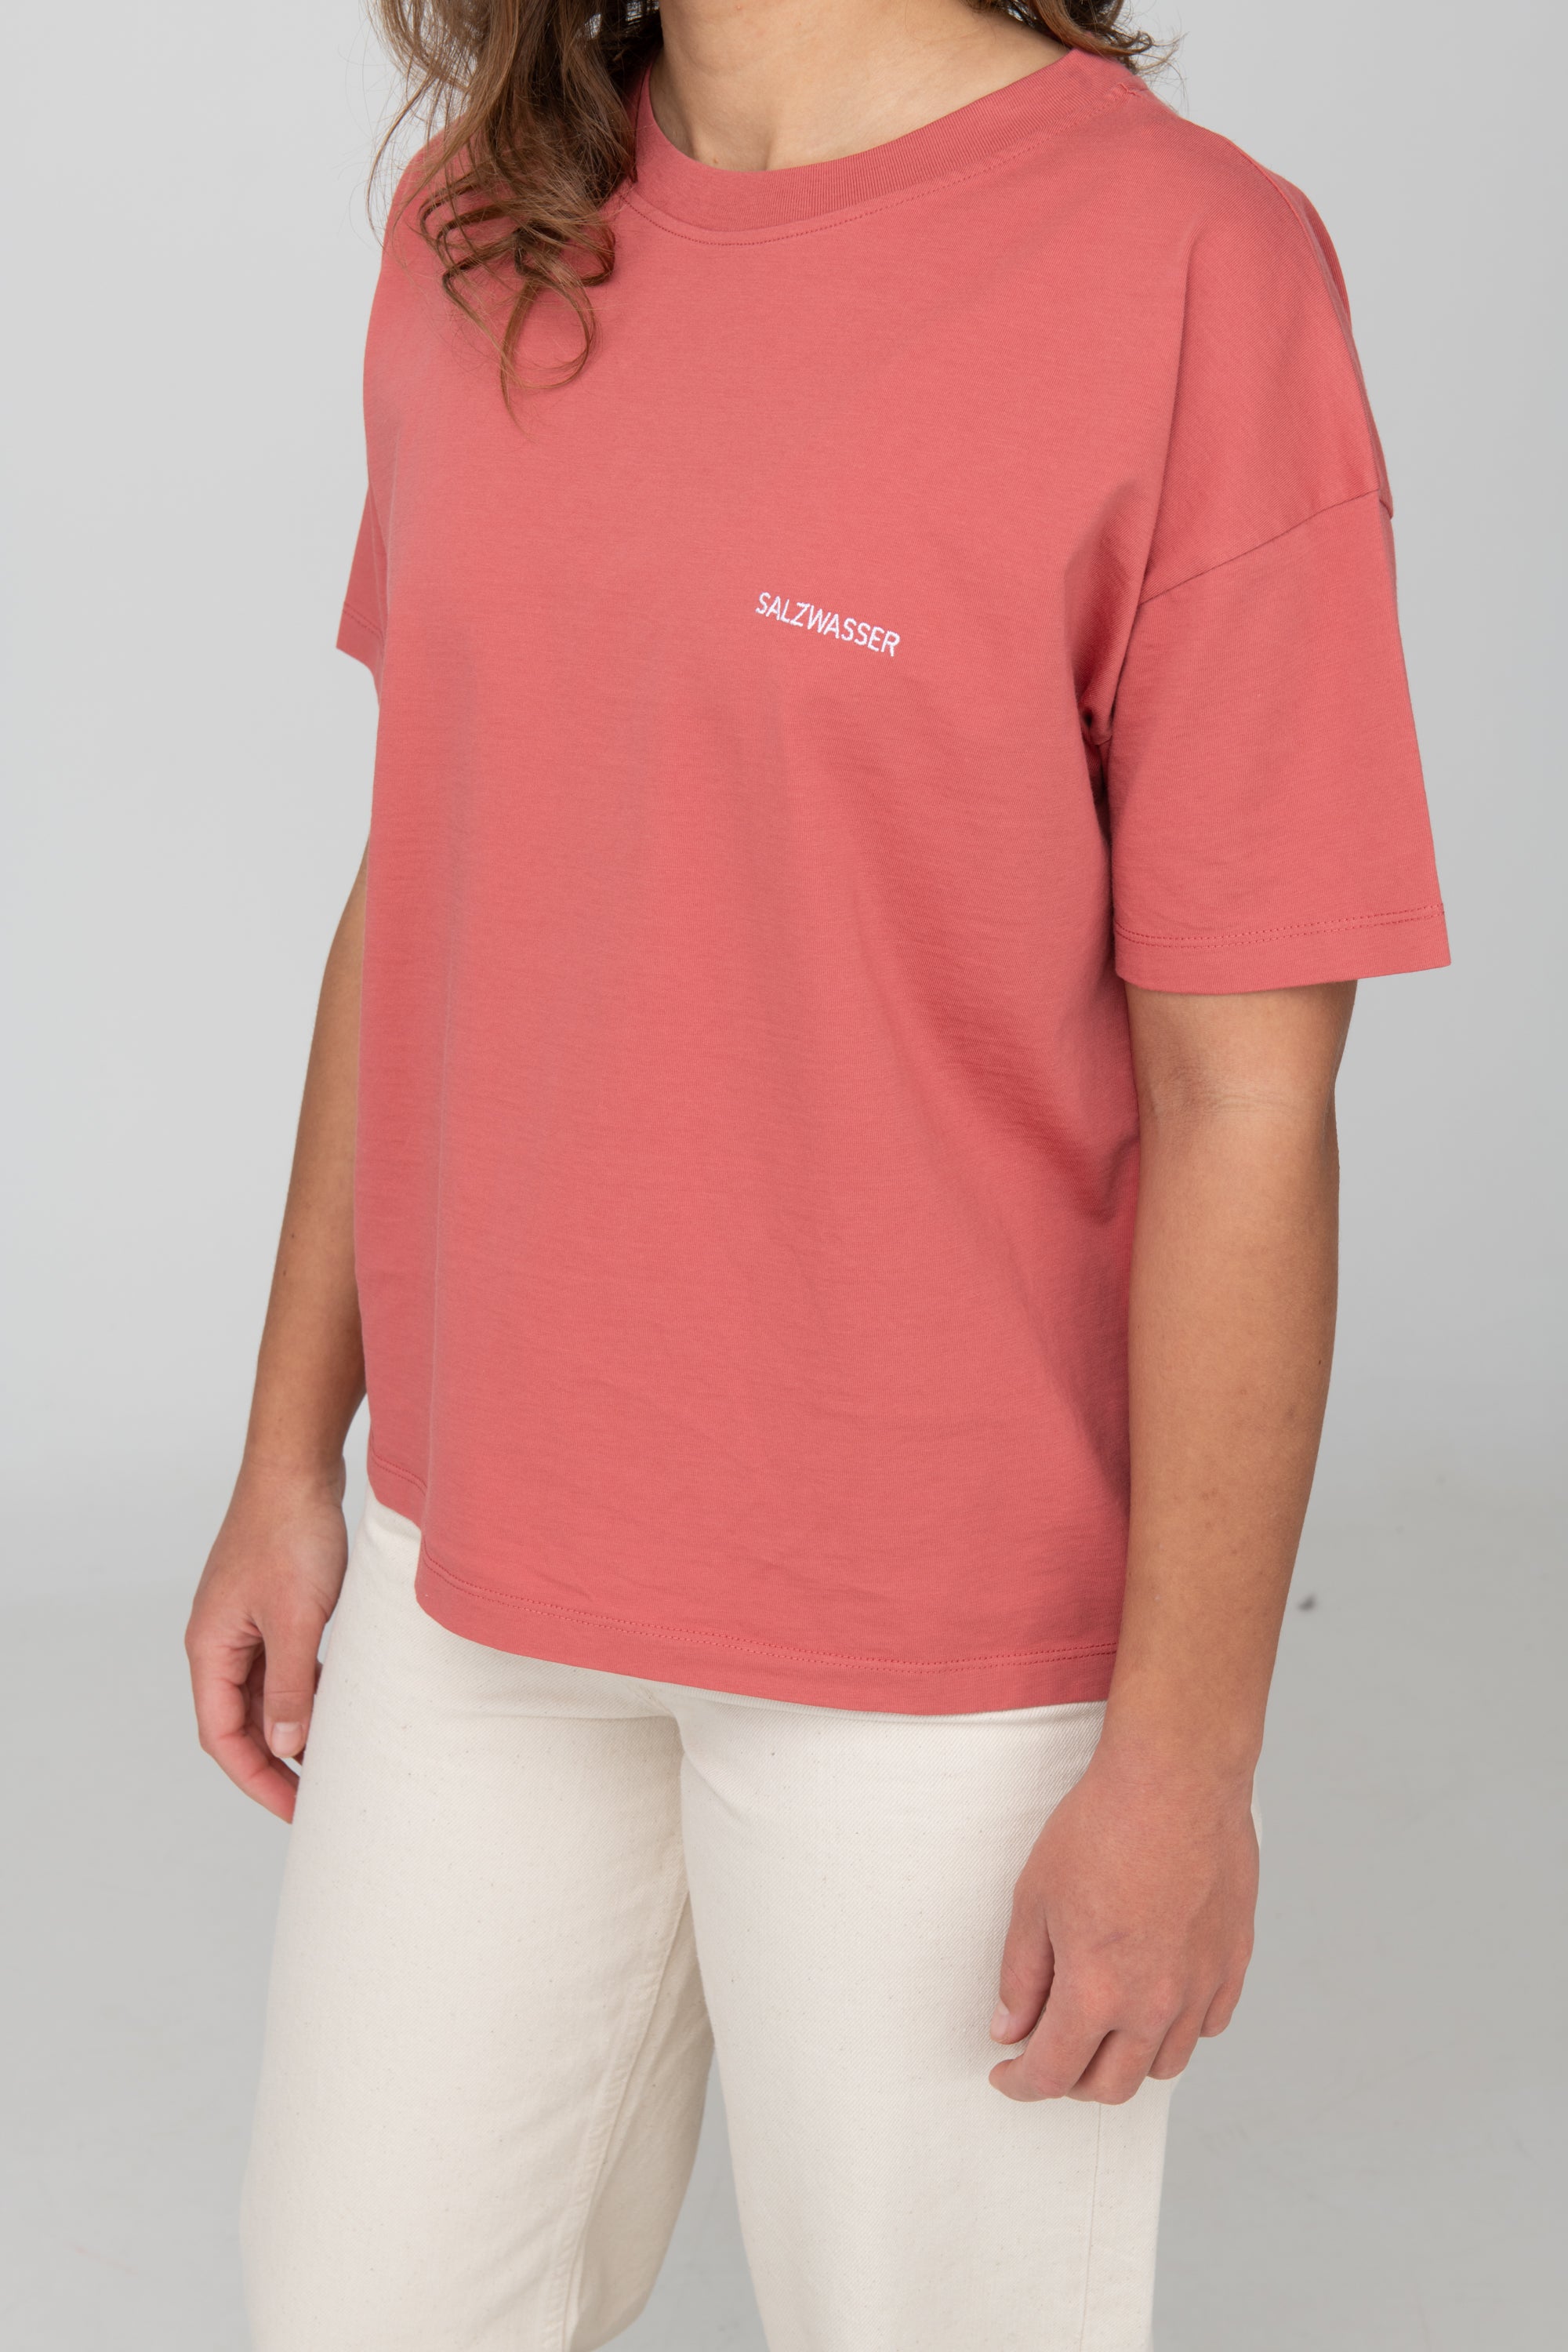 schlichtes T-Shirt in Rot mit weißer SALZWASSER-Stickerei